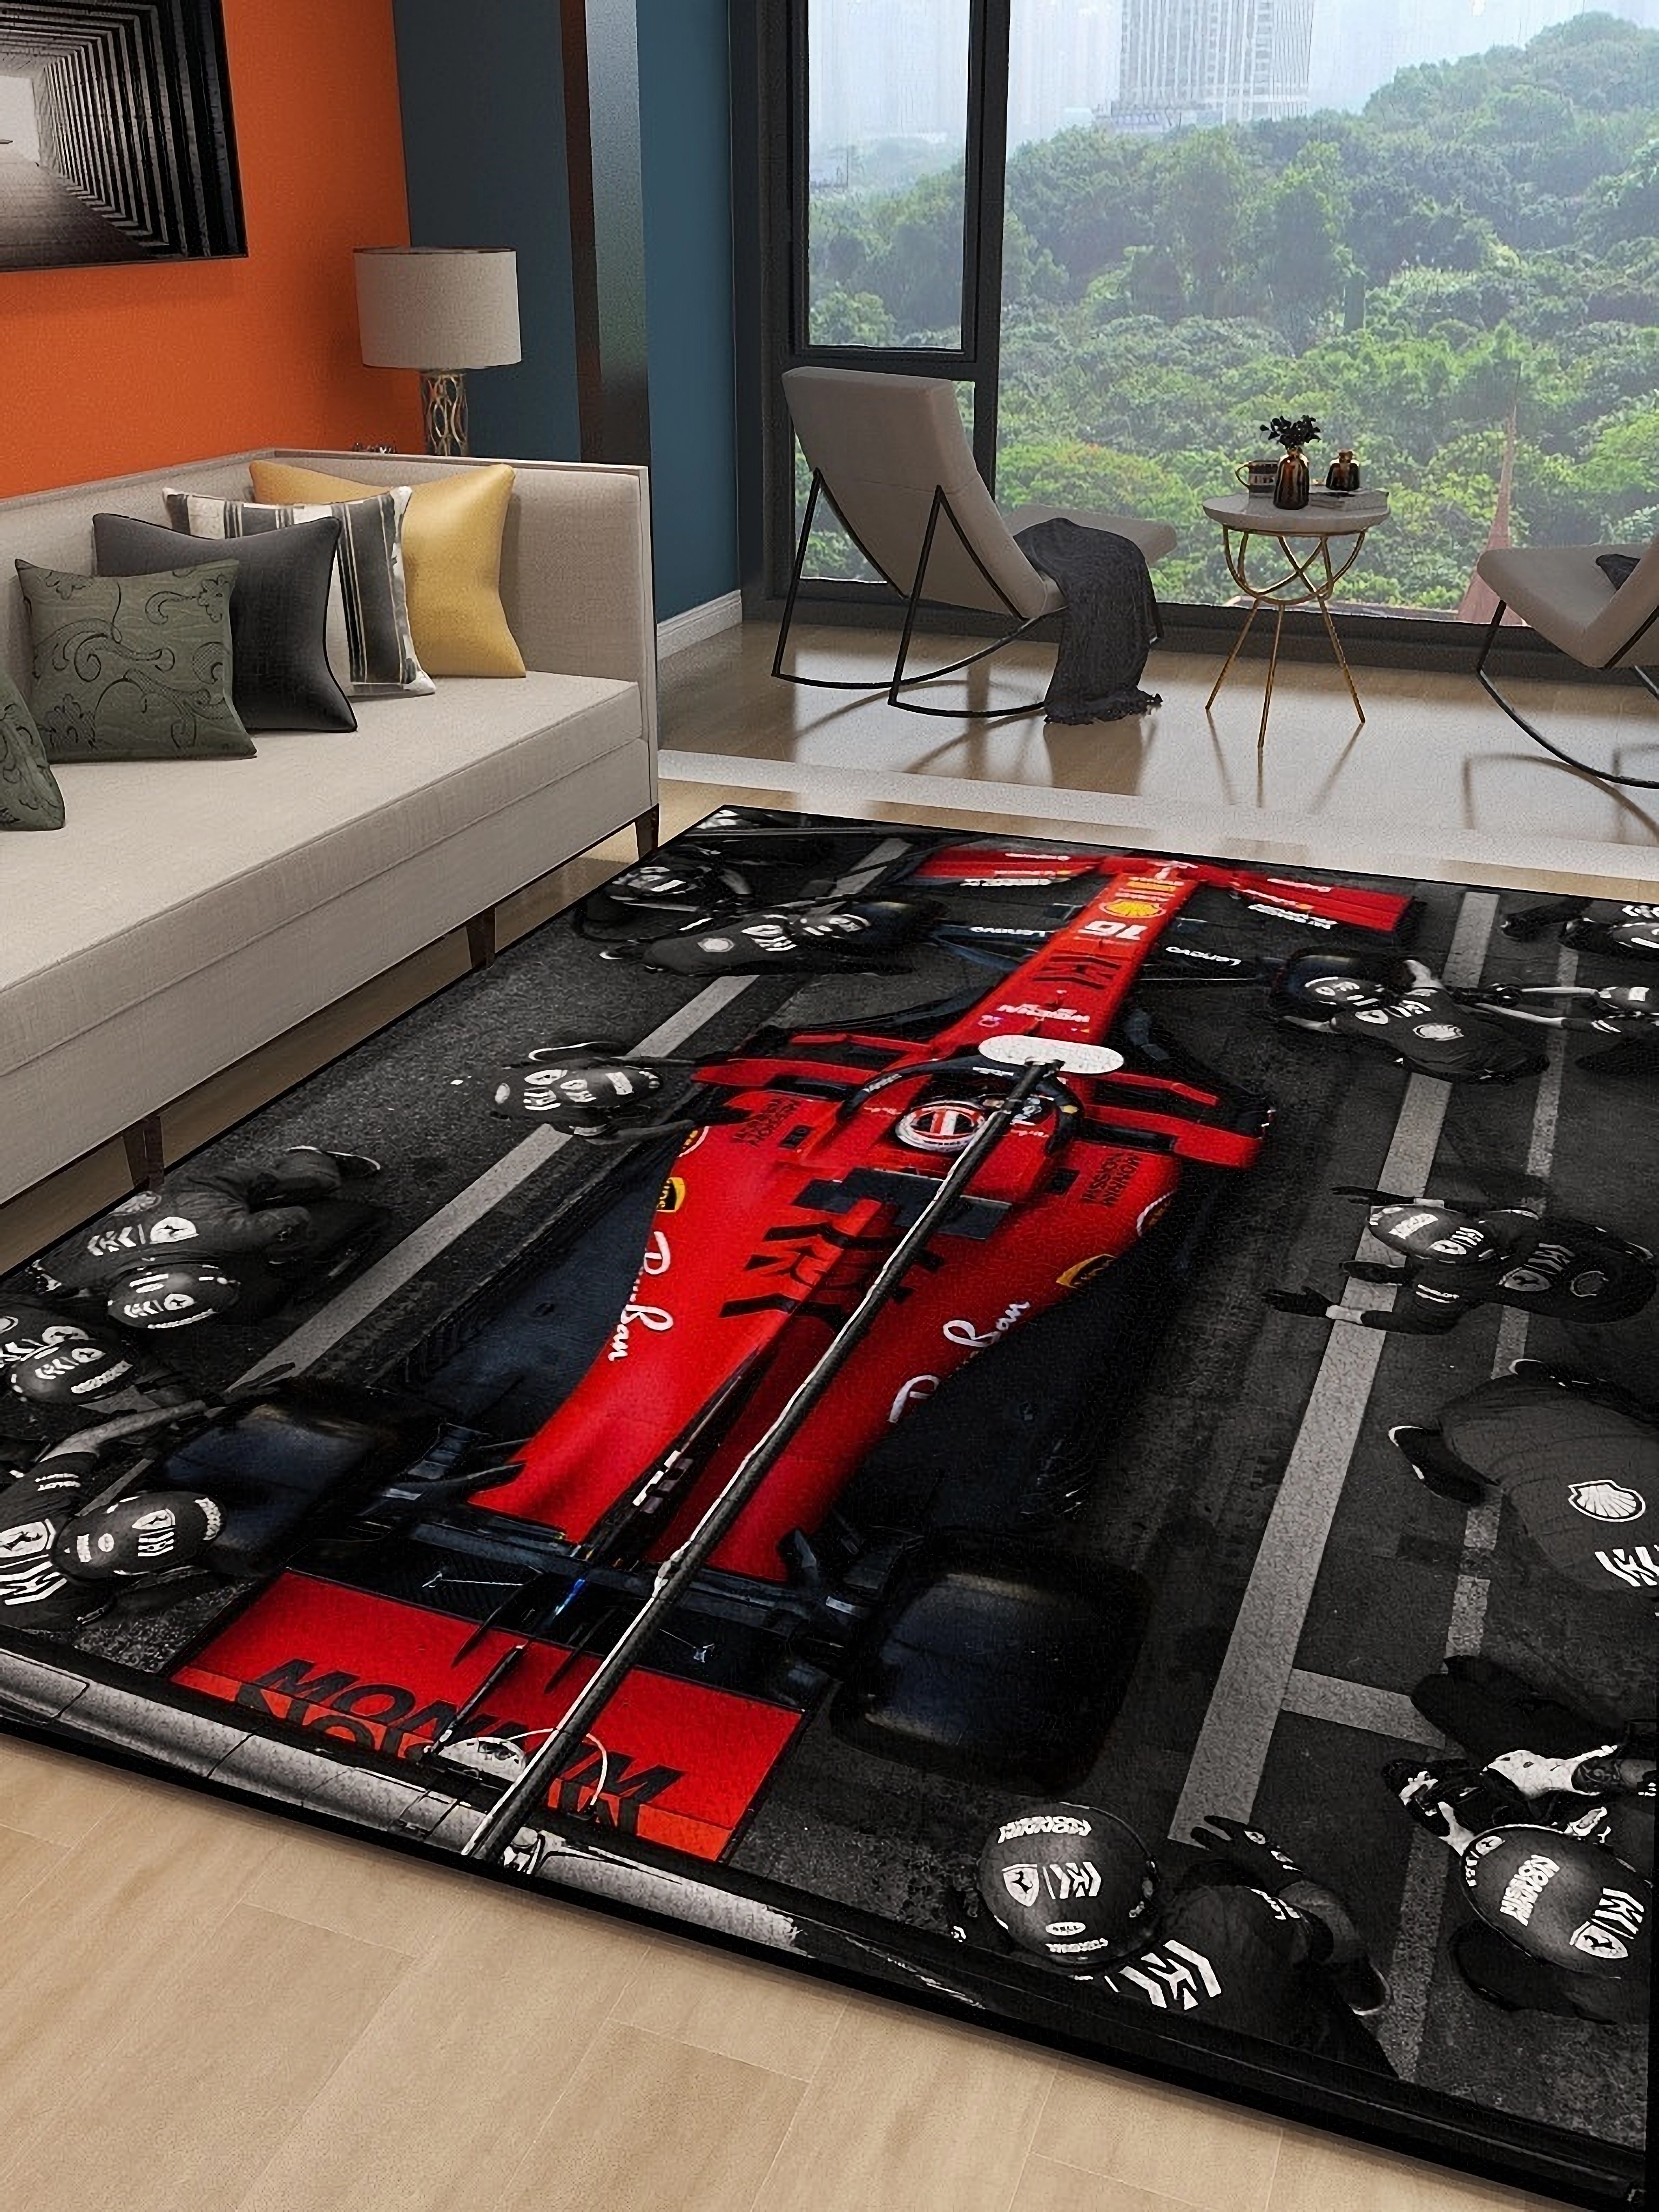 法拉利f1賽車兒童電競房轉椅潮流地墊客廳臥室地毯可手洗吸塵